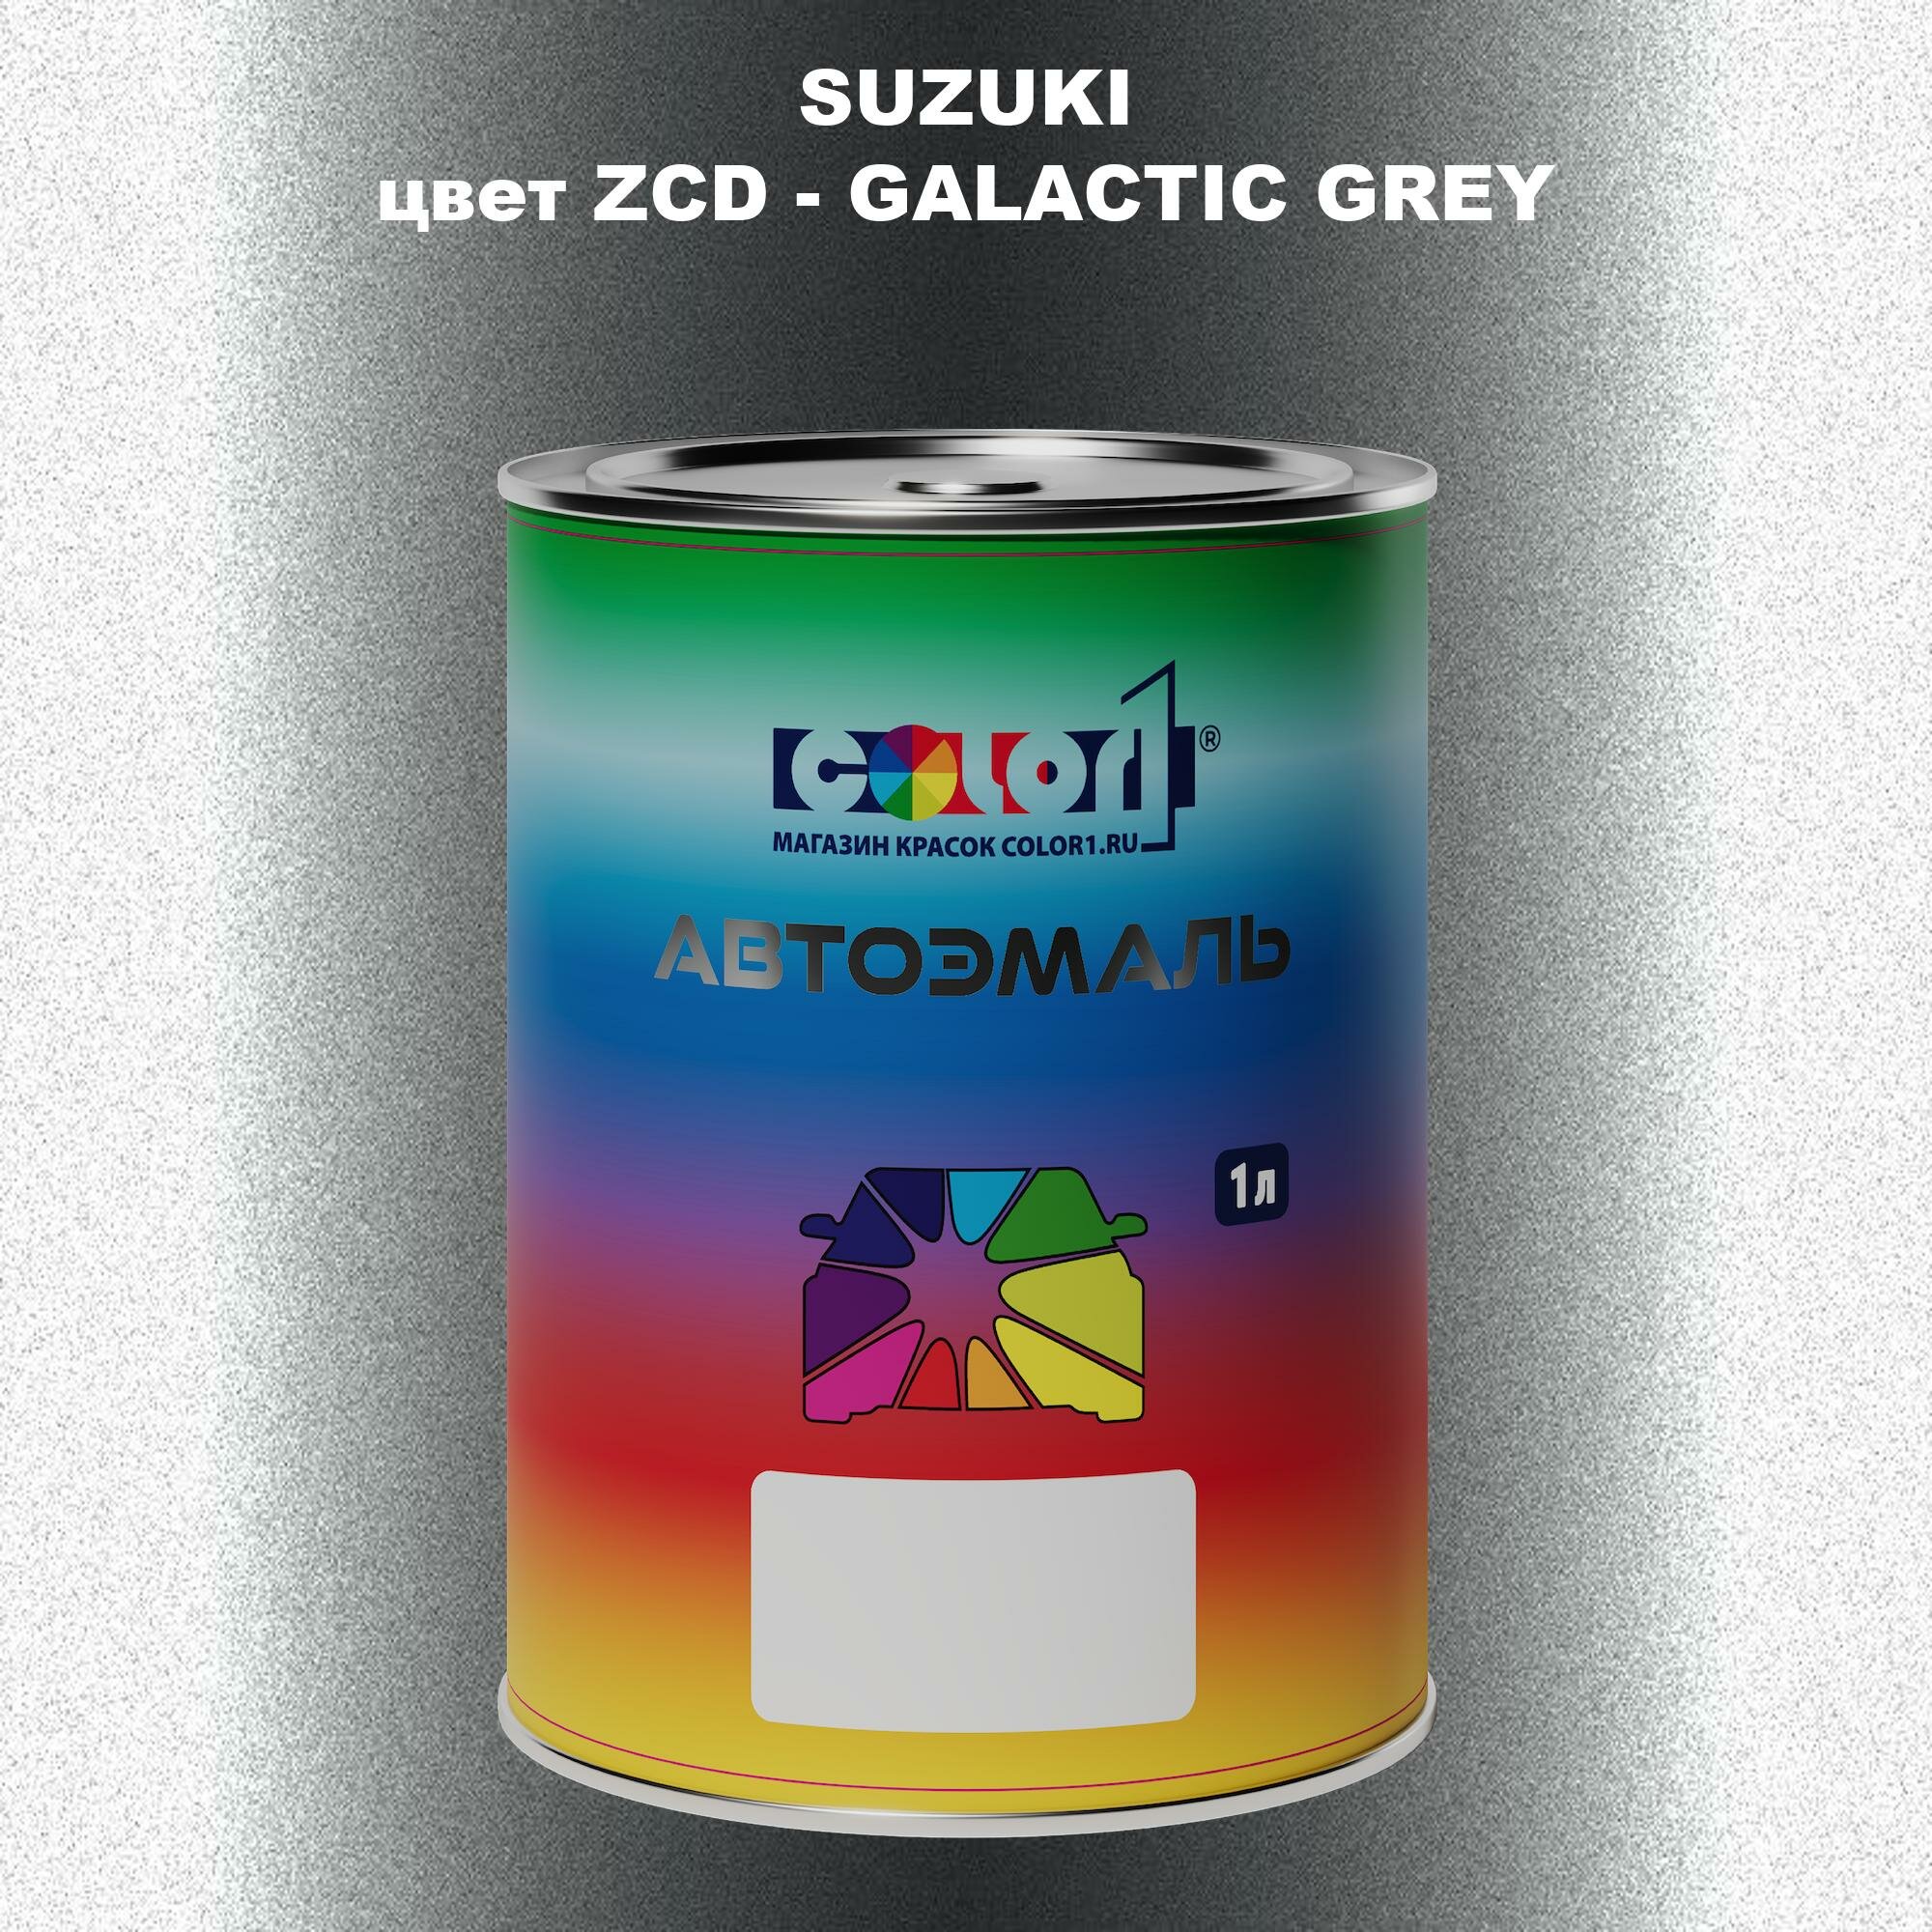 Автомобильная краска COLOR1 для SUZUKI цвет ZCD - GALACTIC GREY